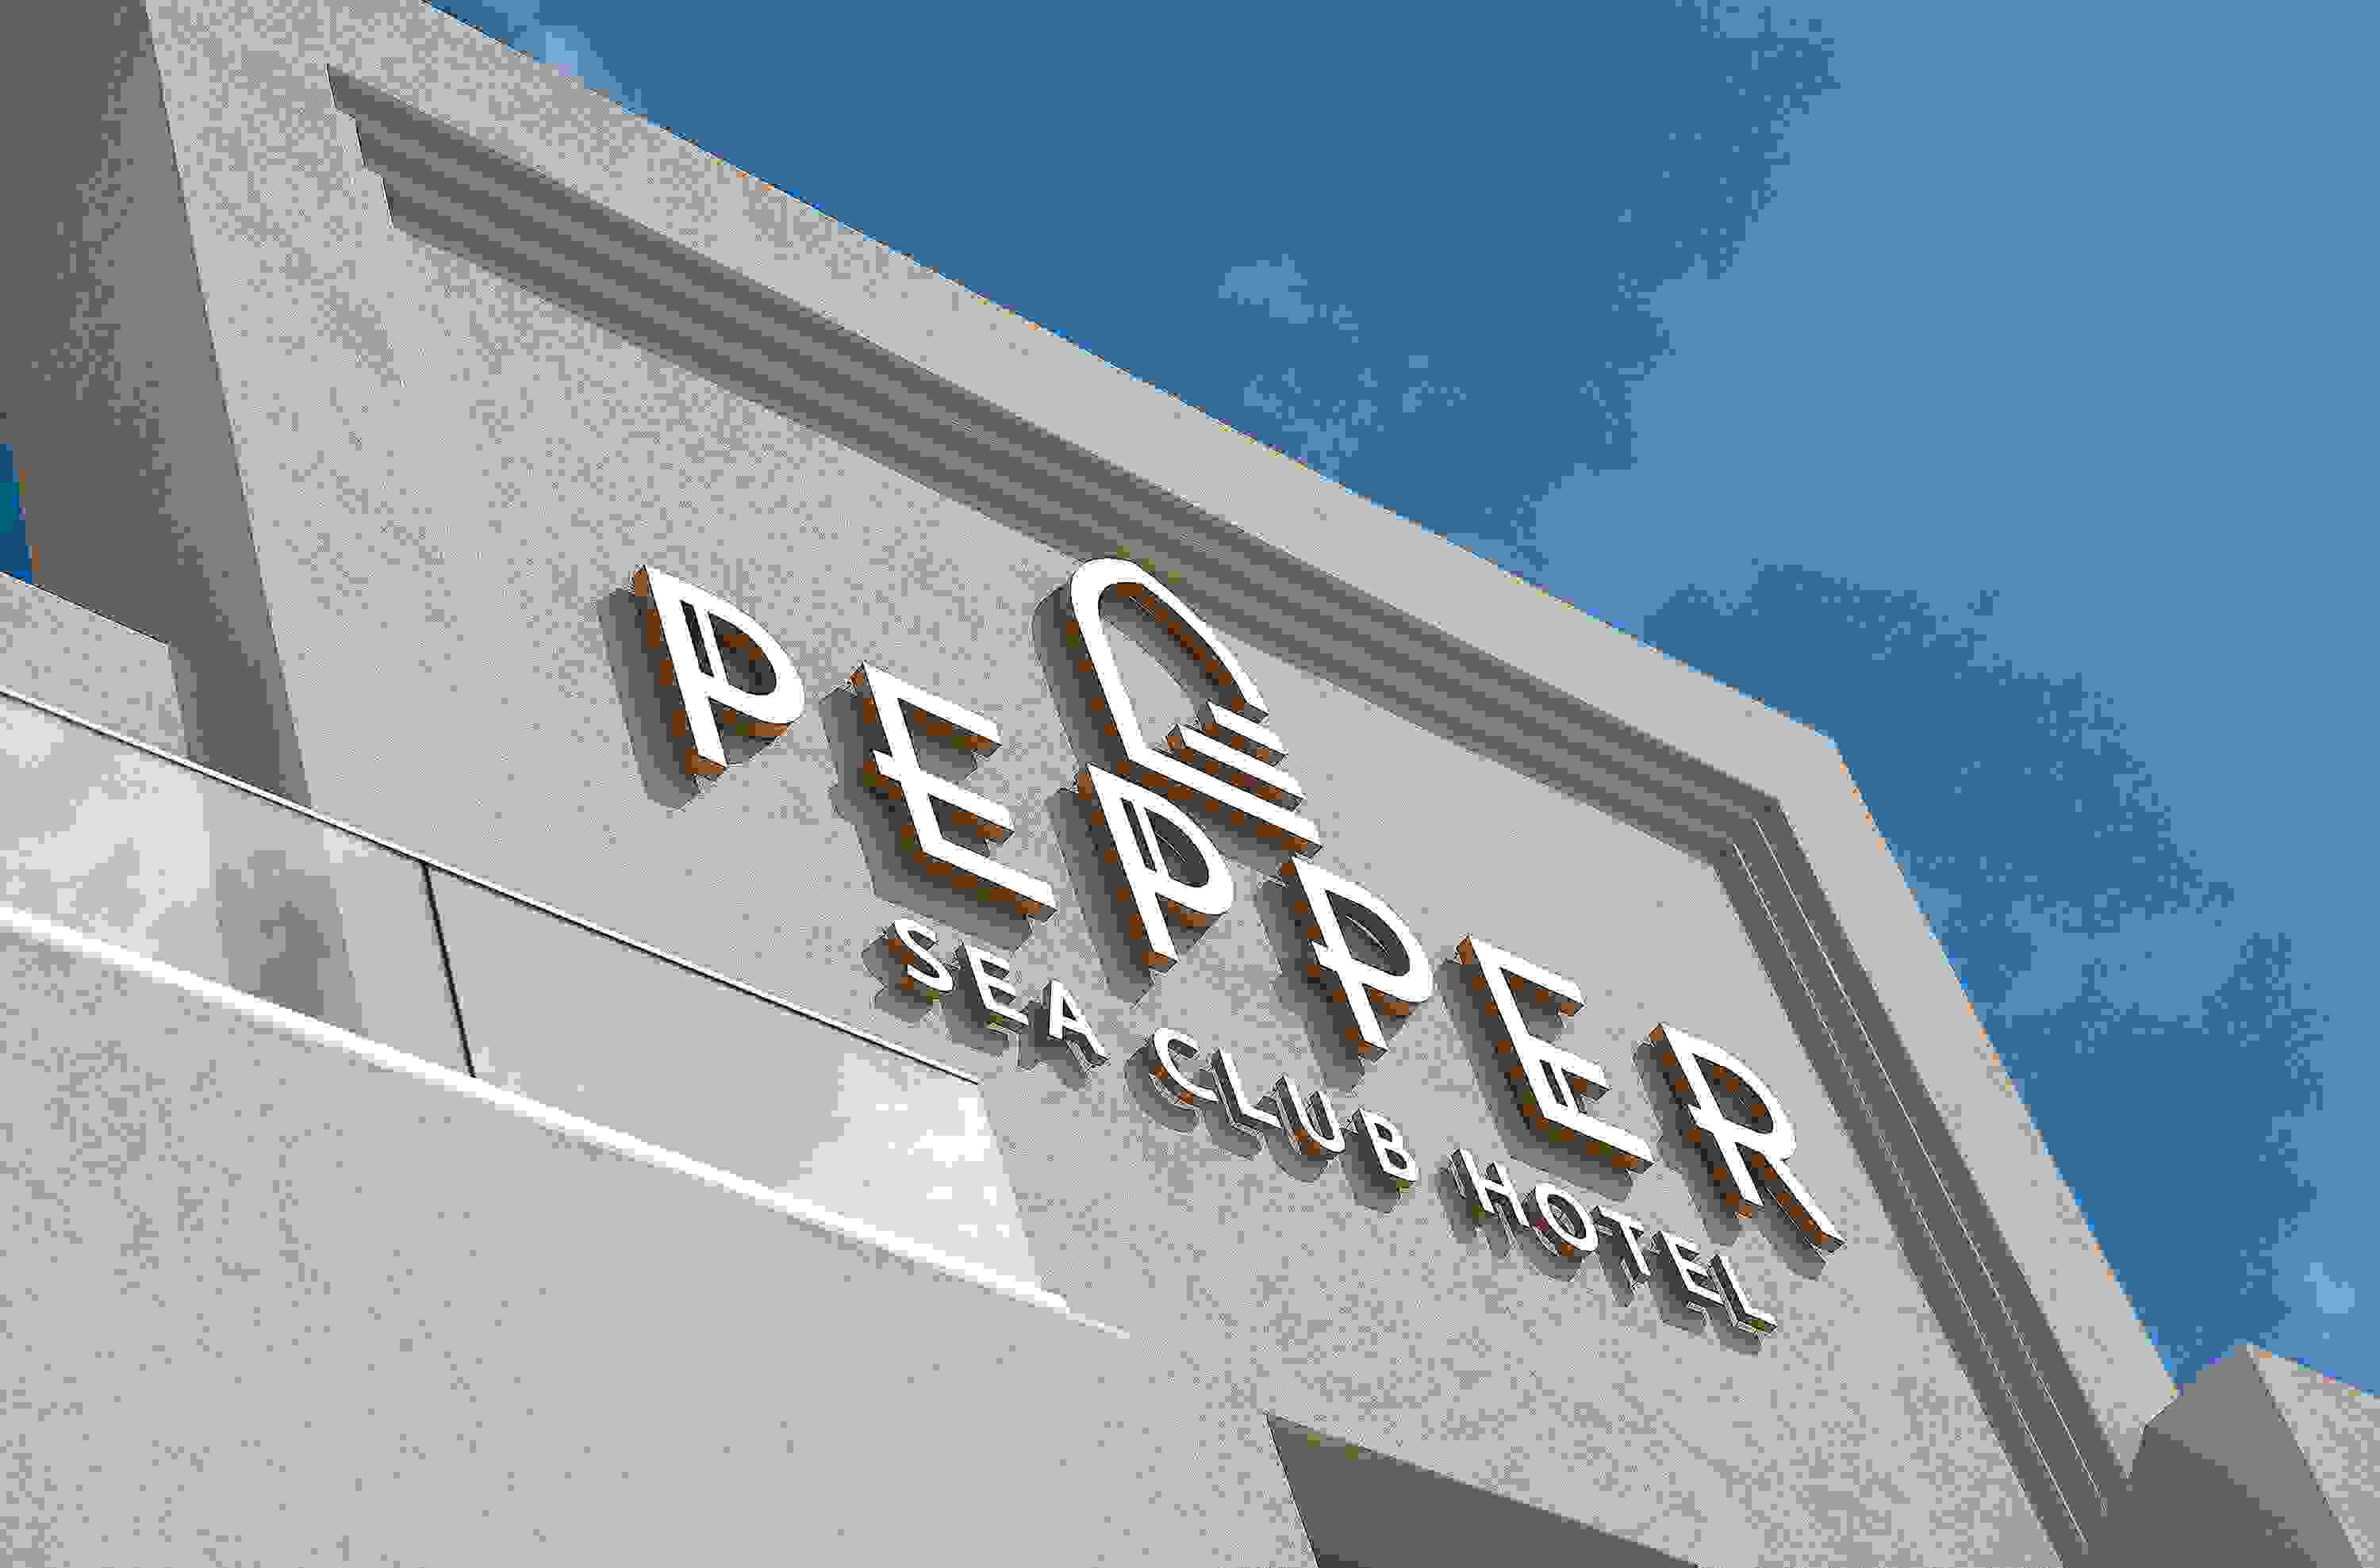 Pepper Sea Club